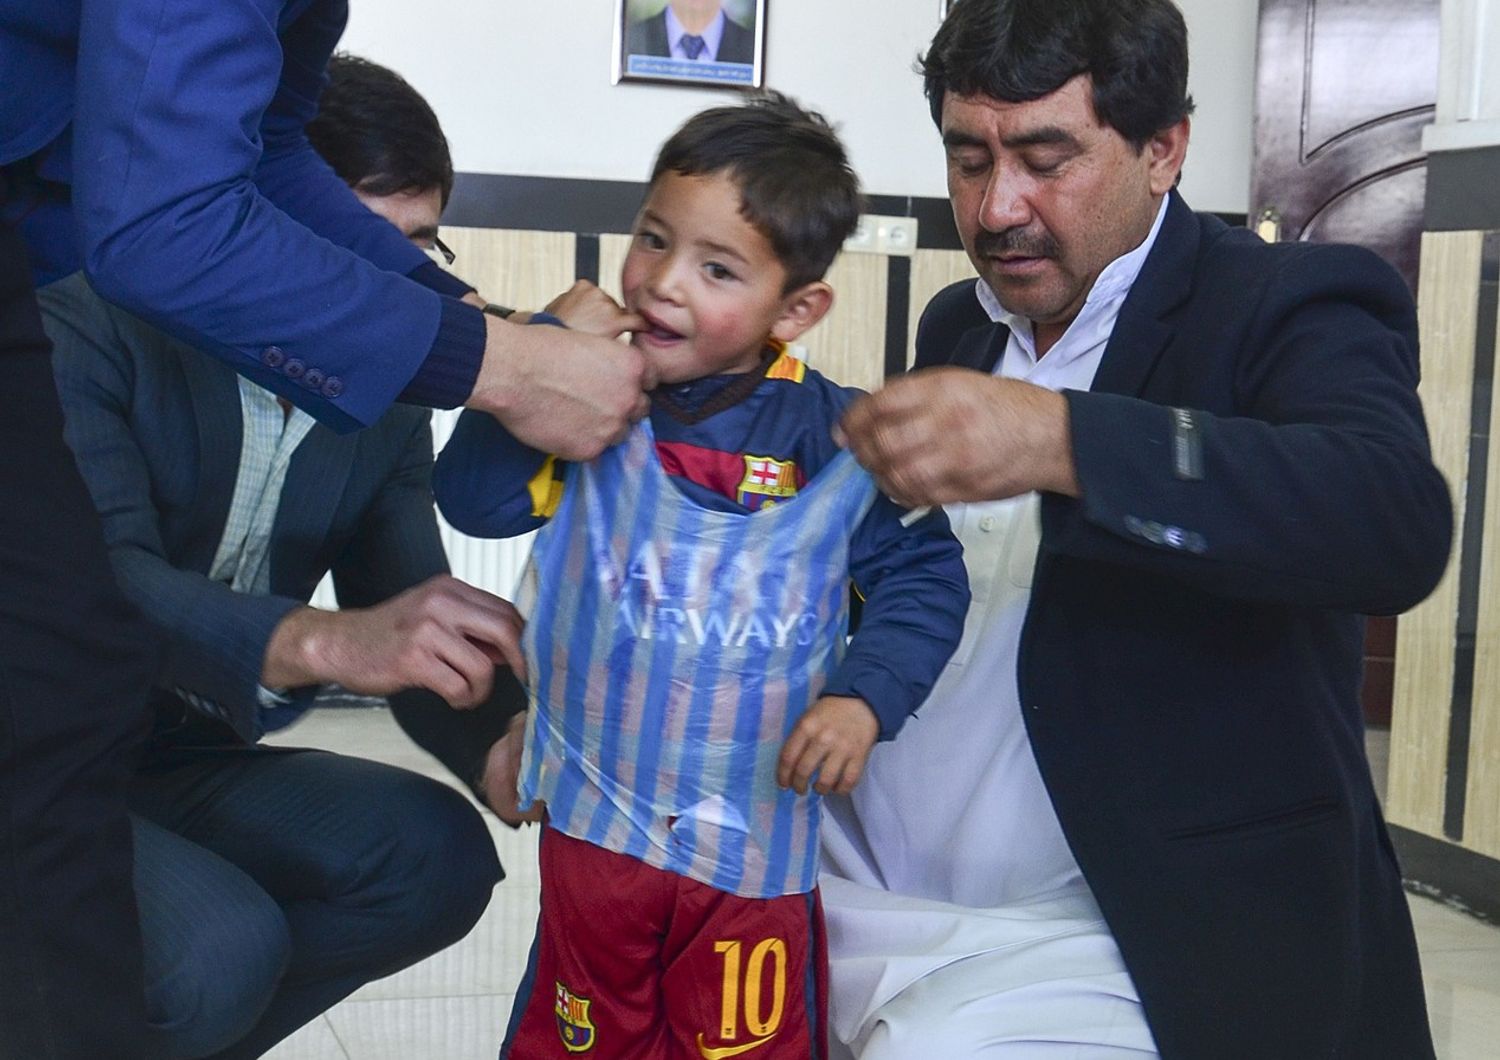 Si avvera il sogno di Murtaza Ahmad, gioca con la maglia di Messi